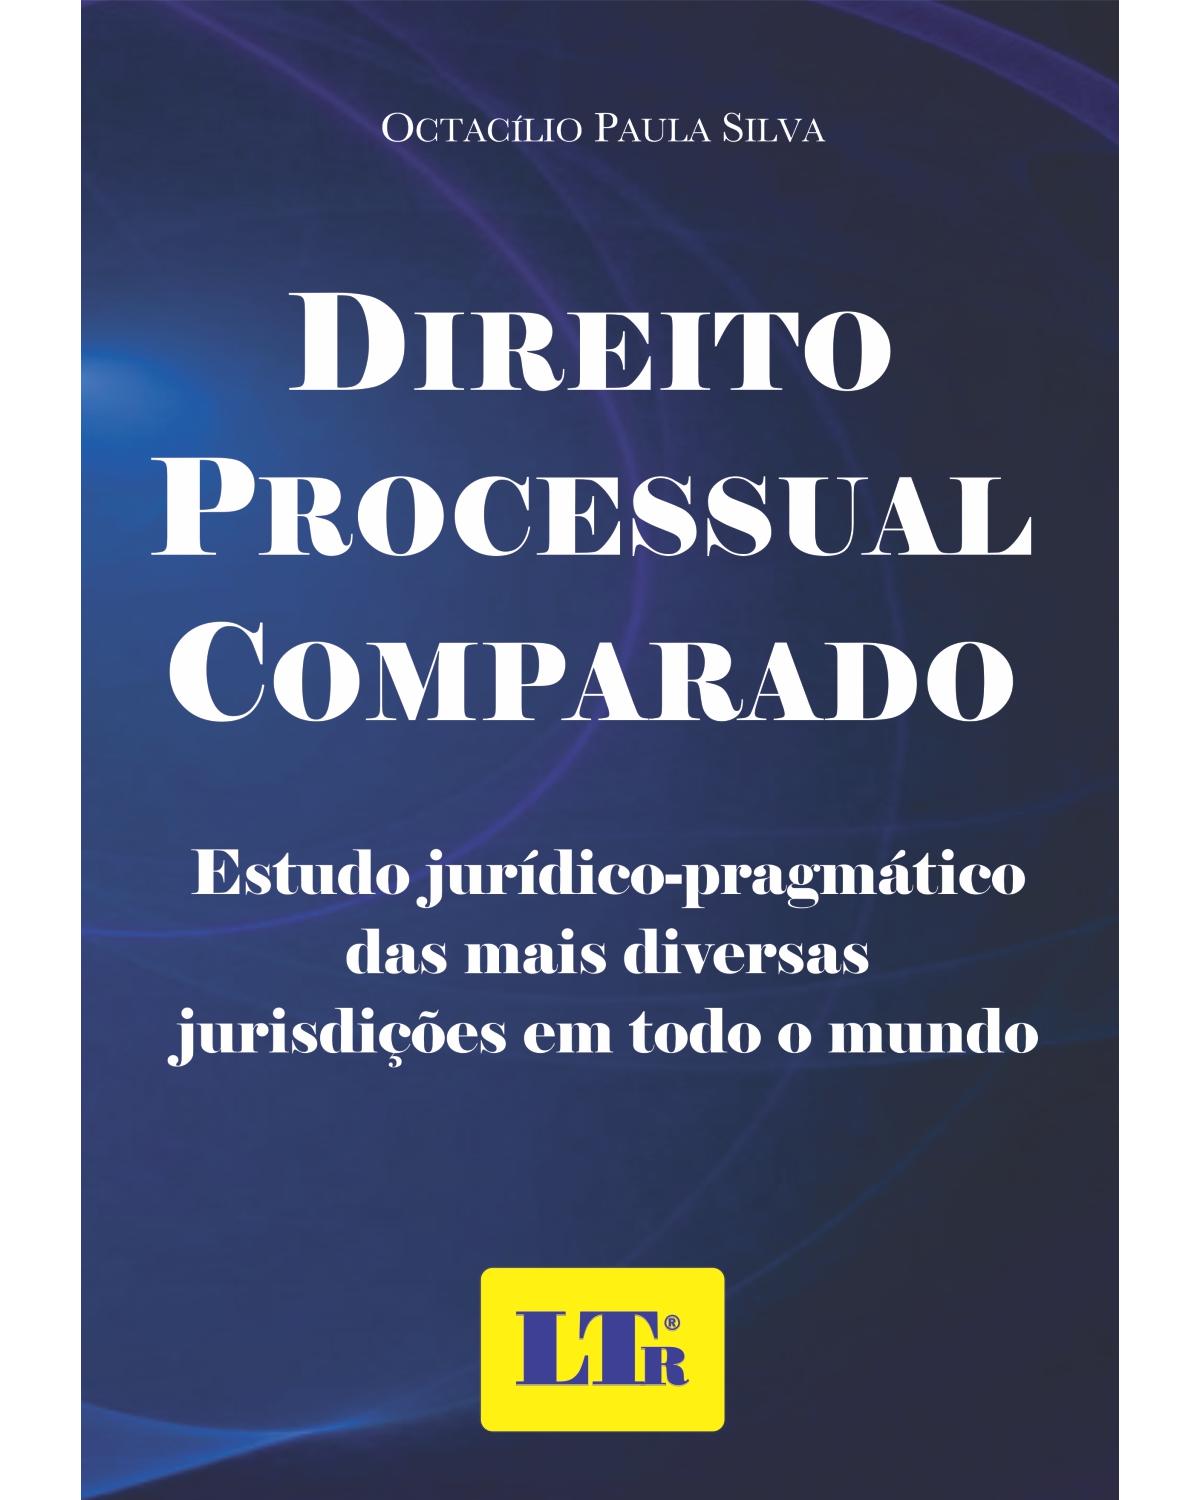 Direito processual comparado: Estudo jurídico-pragmático das mais diversas jurisdições em todo o mundo - 1ª Edição